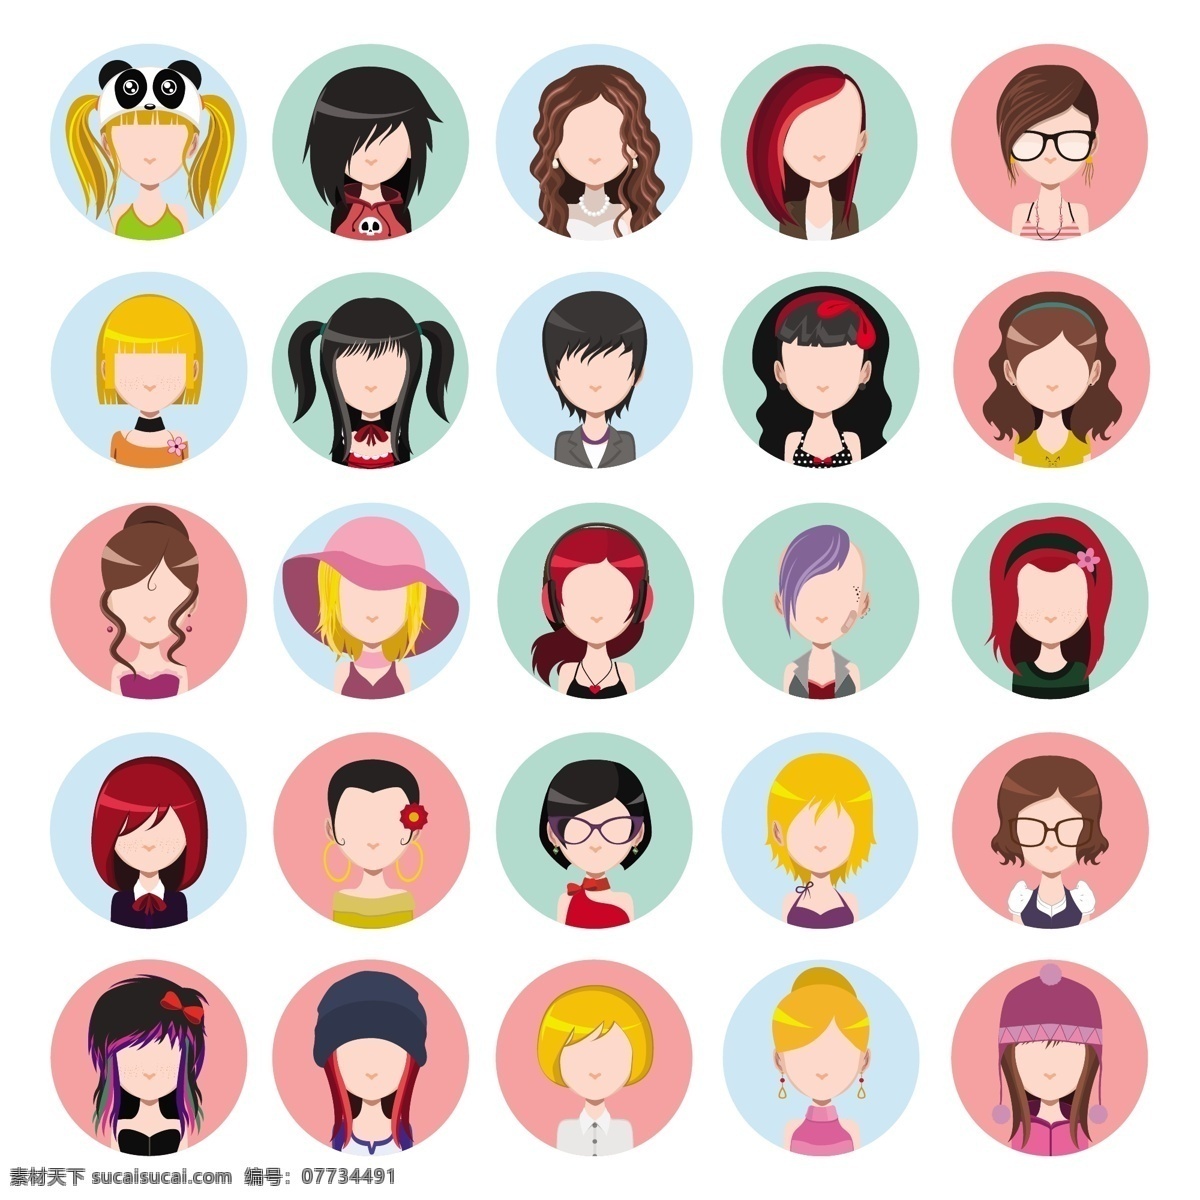 女性角色集合 人 头发 脸 颜色 头像 帽子 头 女人头发 女人脸 收藏 套装 彩色